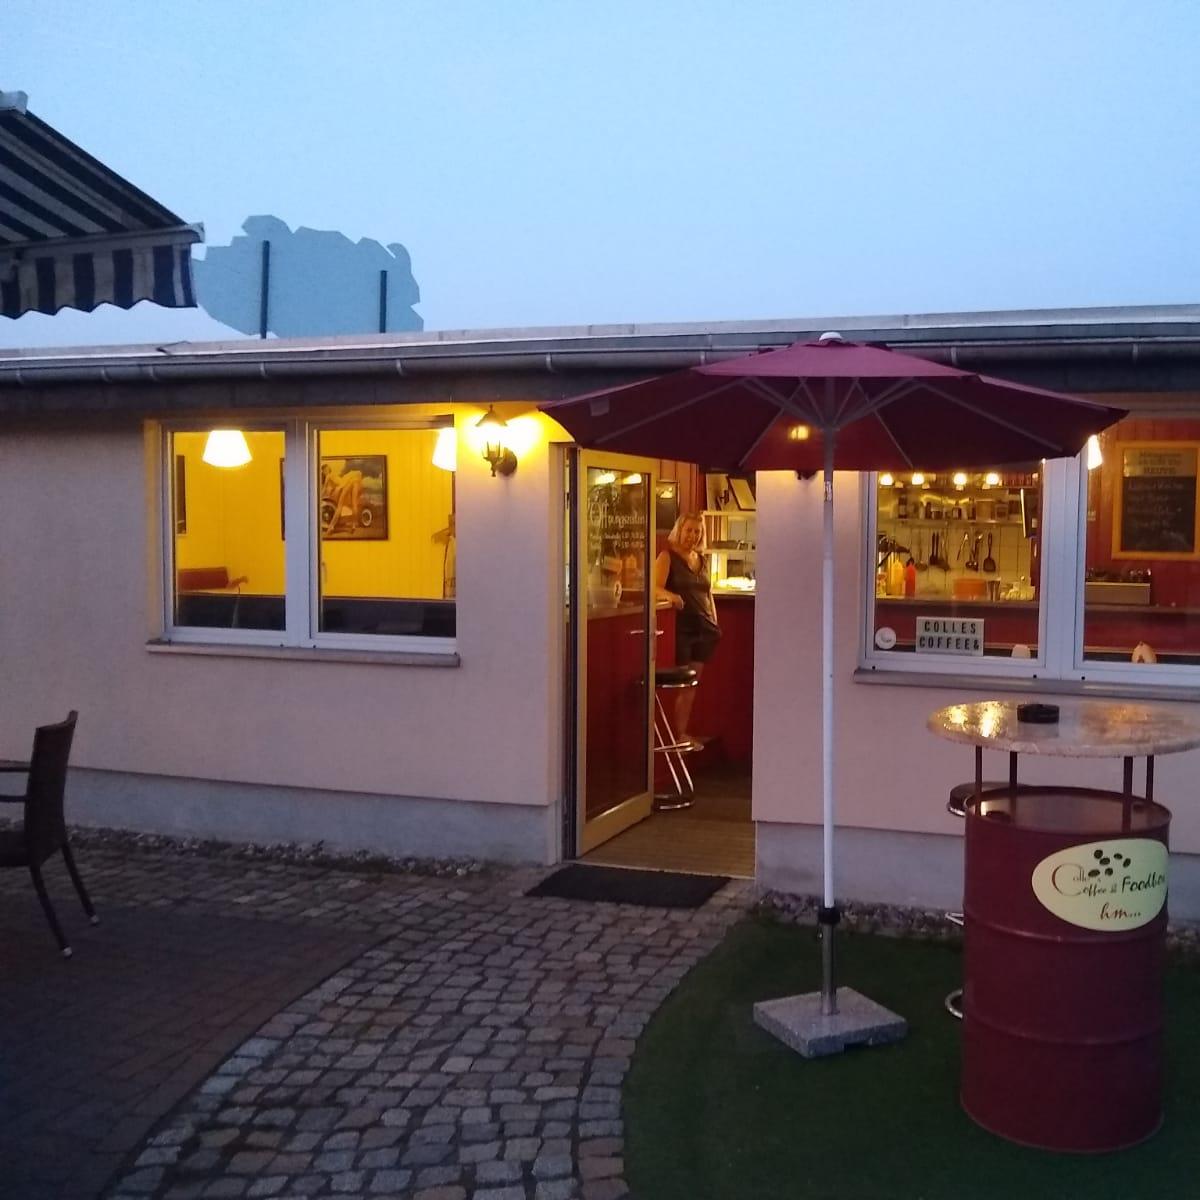 Restaurant "Colle´s Coffee & Foodbox" in Oranienburg